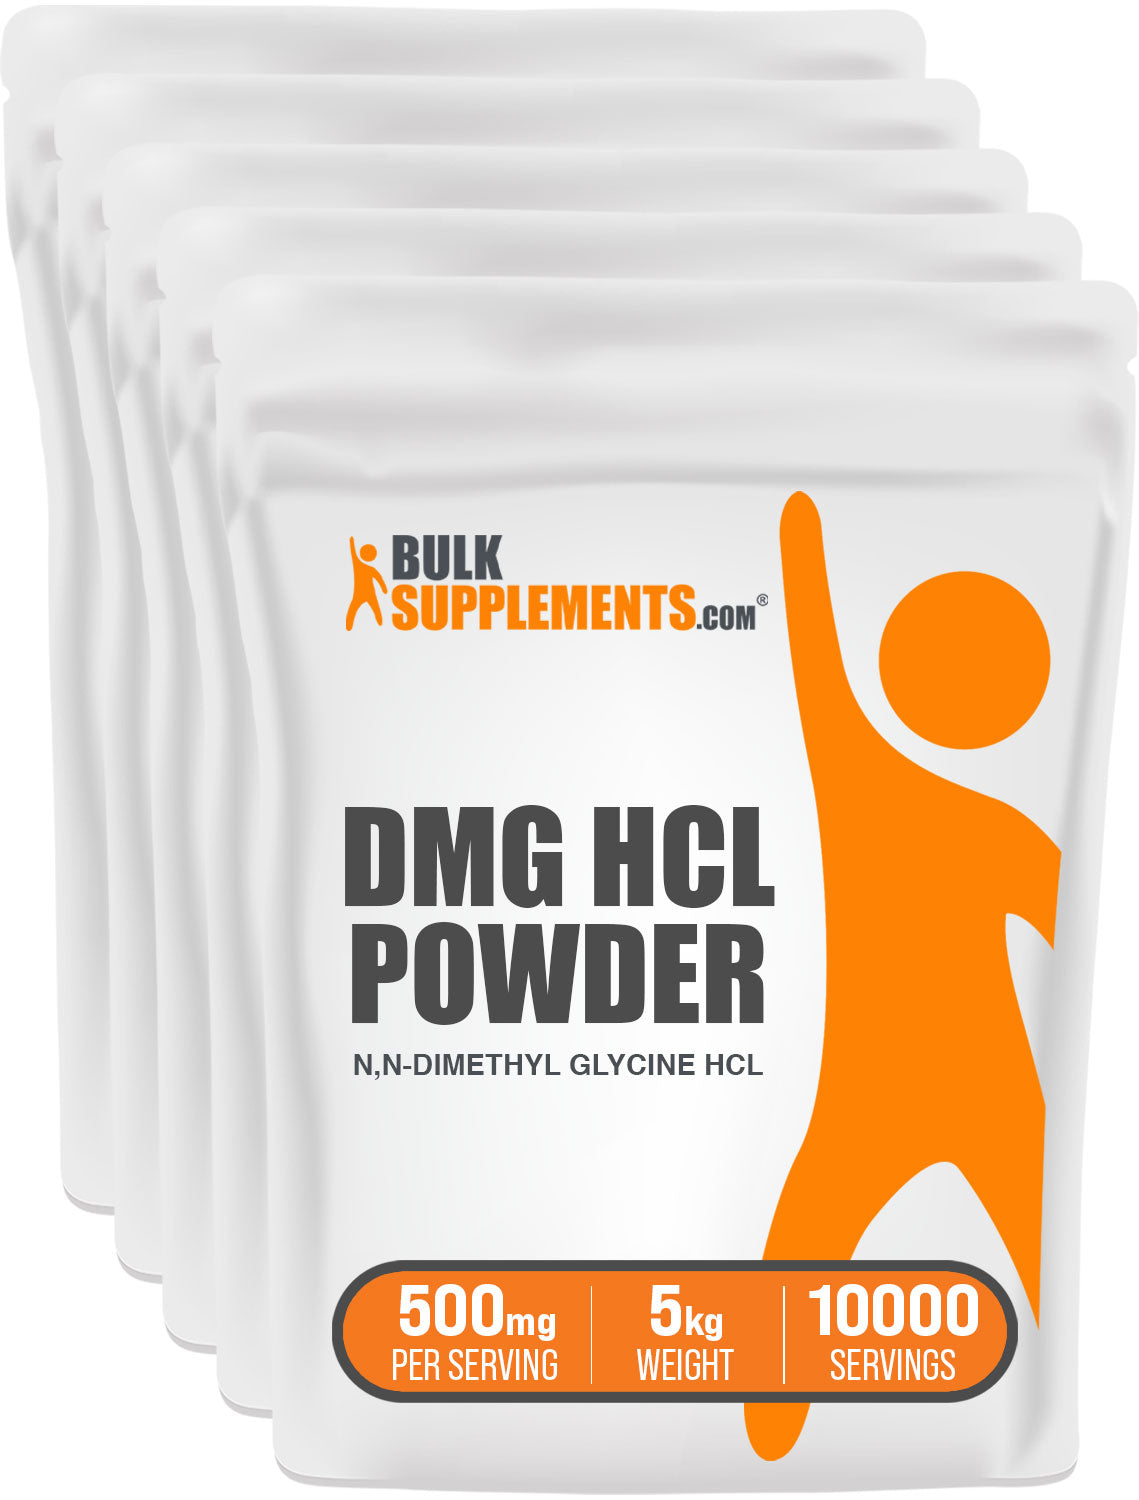 BulkSupplements DMG HCl Powder 5g bag